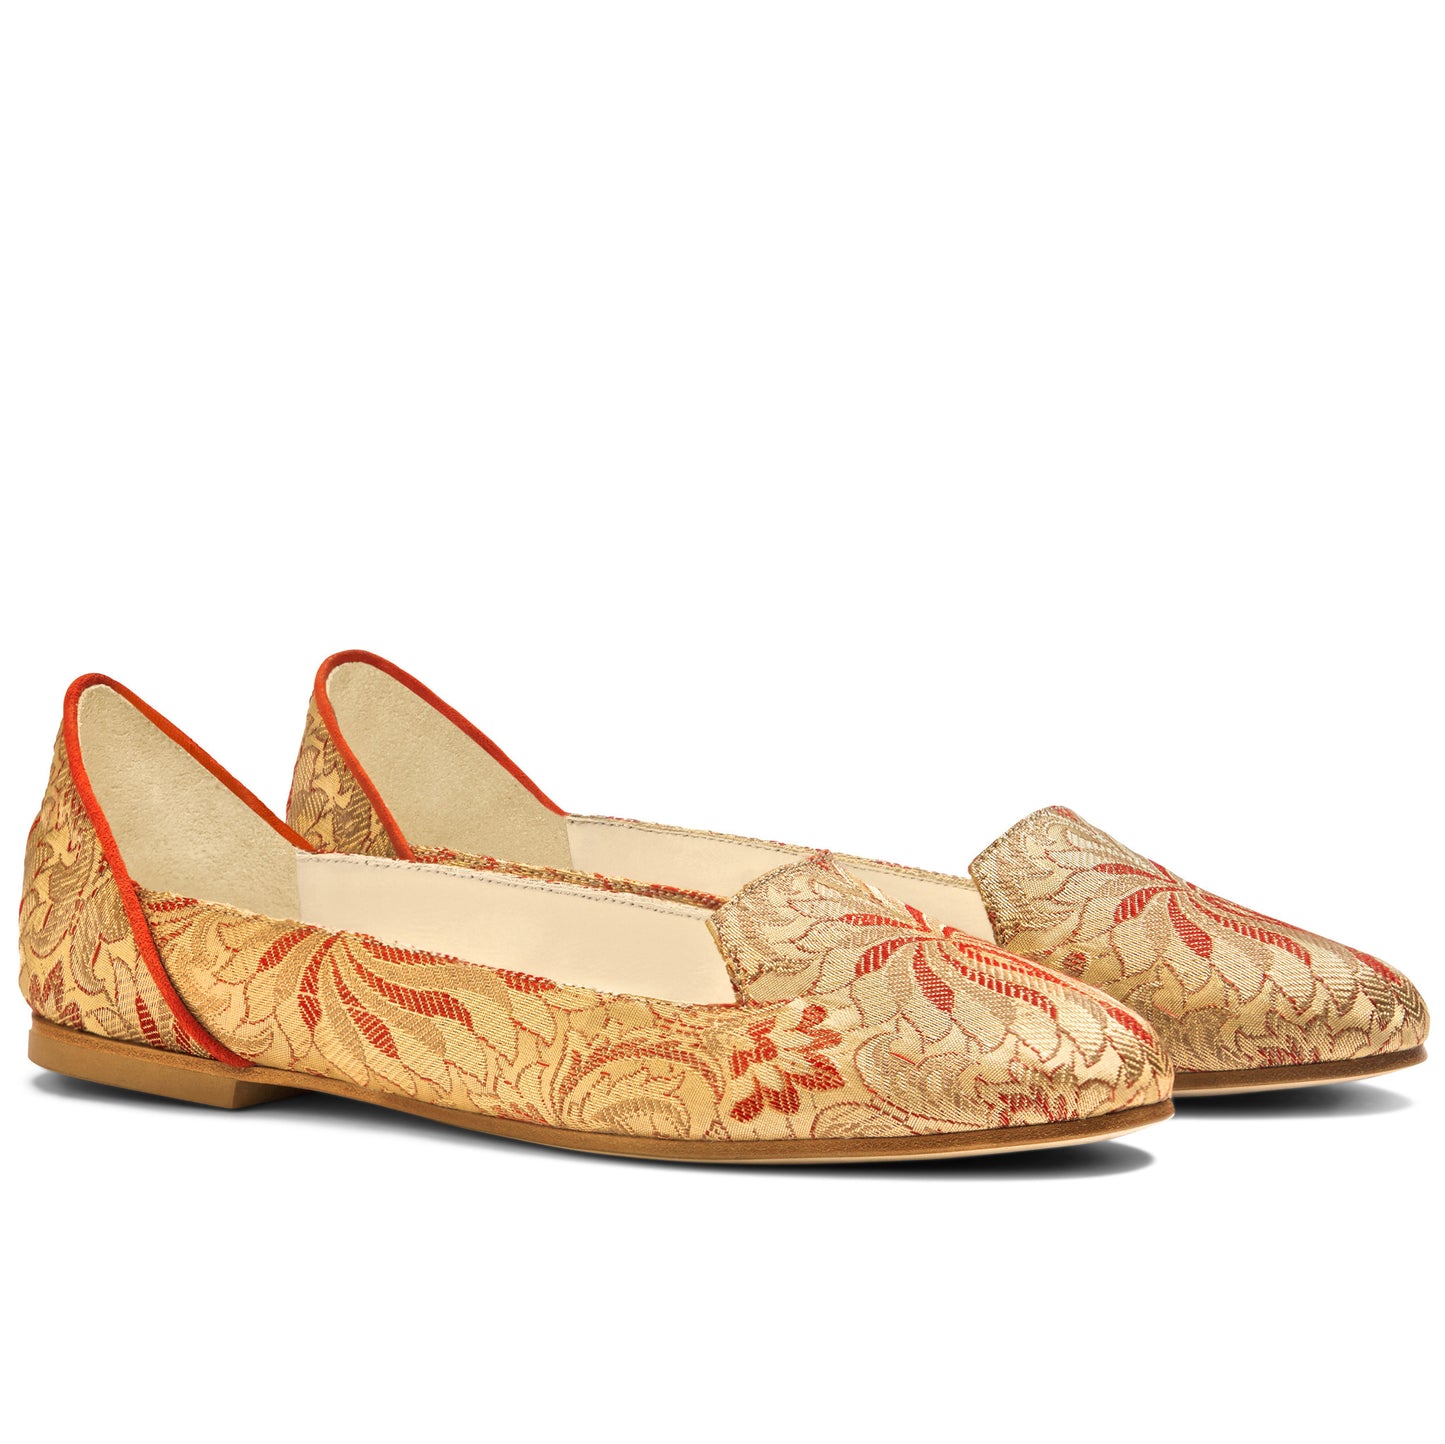 Ballet Flat Shoes, Lilian of Banaras Red Ballet Flats - Boté A Mano